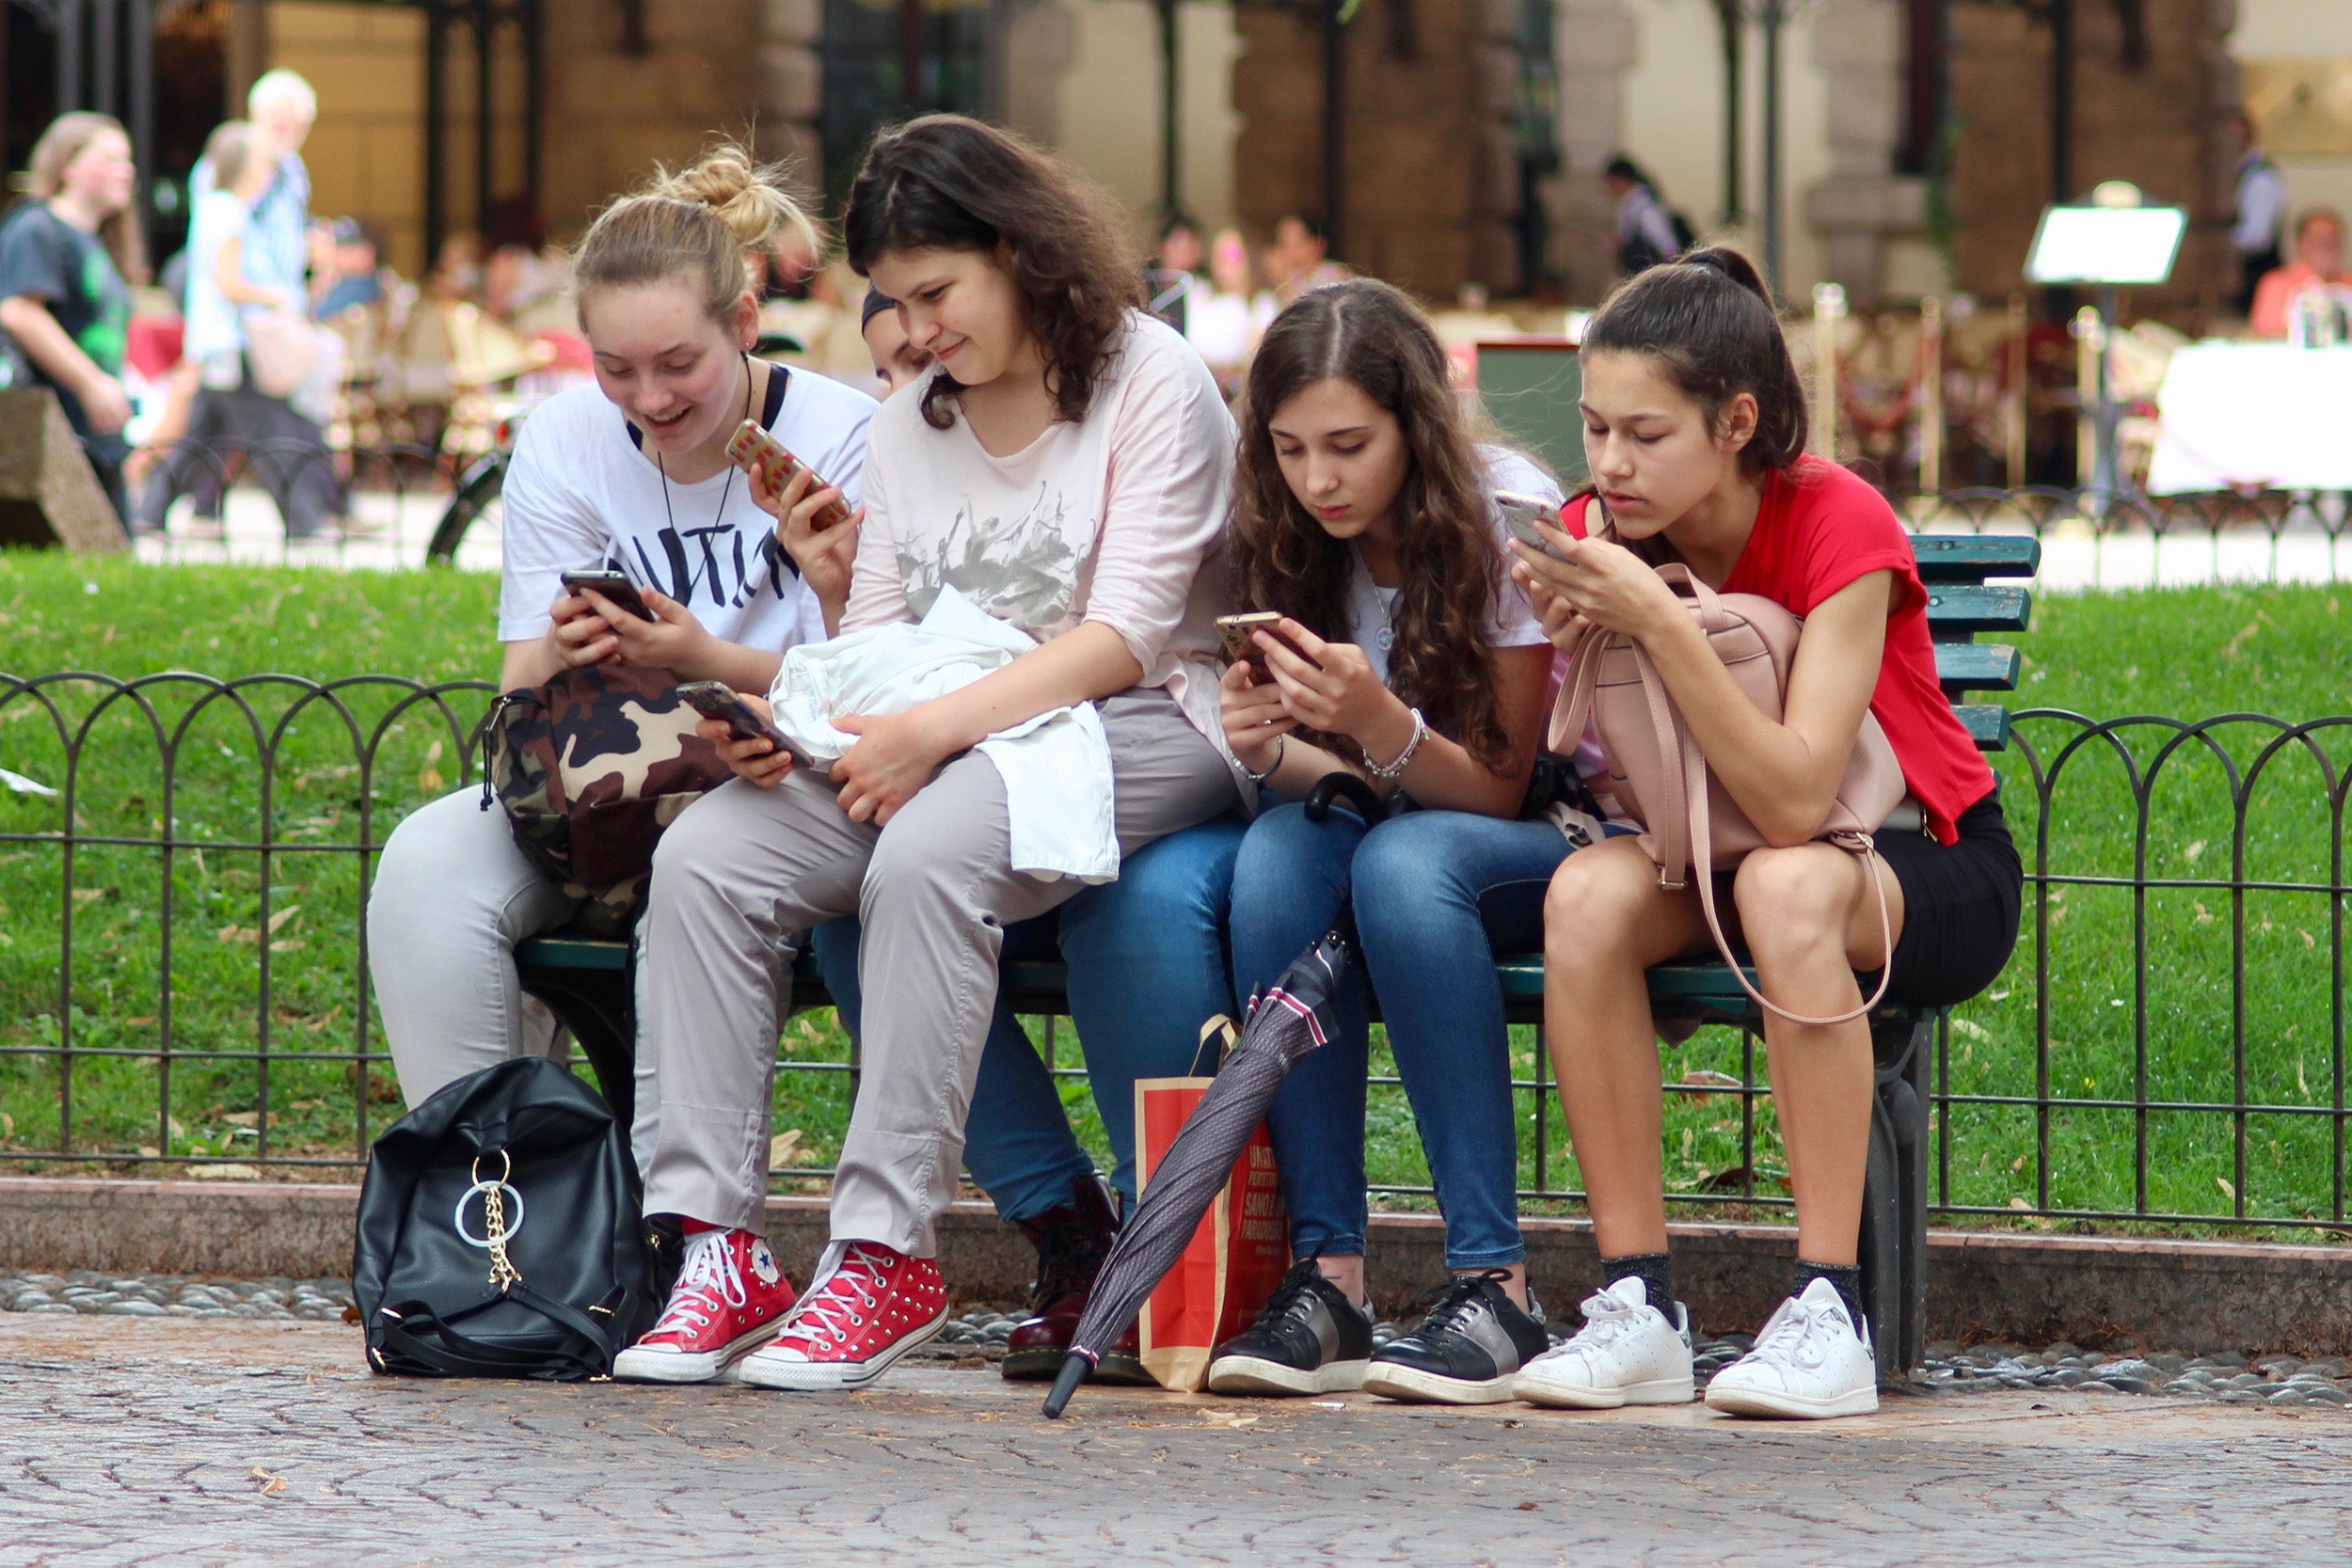 Teens on smartphones